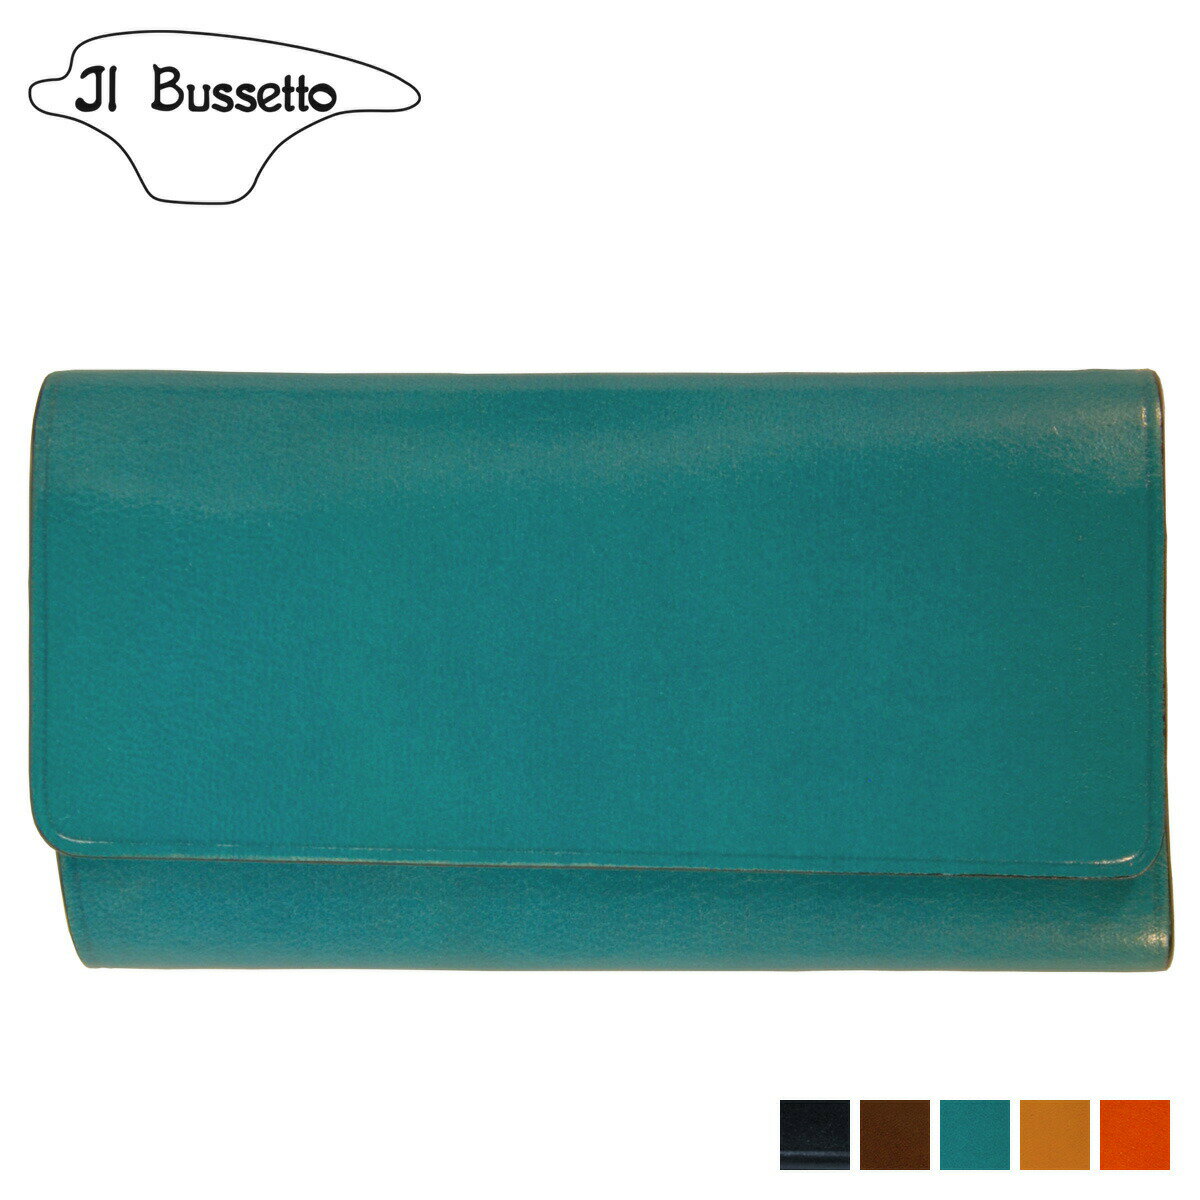  Il Bussetto KEY CASE イルブセット キーケース キーホルダー メンズ 4連 本革 ネイビー ダーク ブラウン ライト ブルー イエロー オレンジ 781520